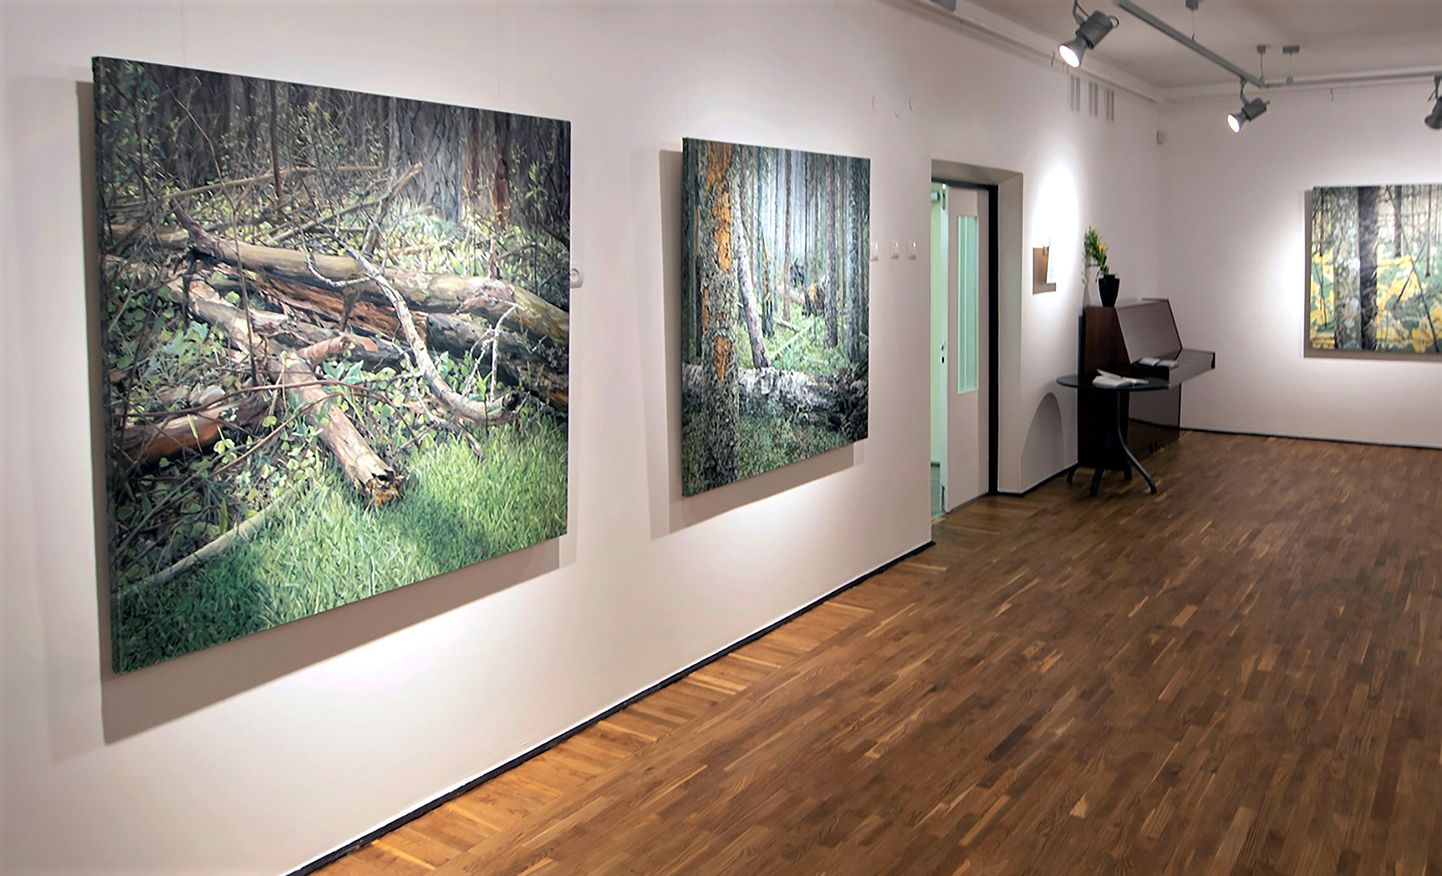 Jane Remmi maalinäitust "Rägastikud, Metsik paradiis, Metsamorfoos ja mnt" näeb Jõhvi kunstikooli galeriis 26. veebruarini.